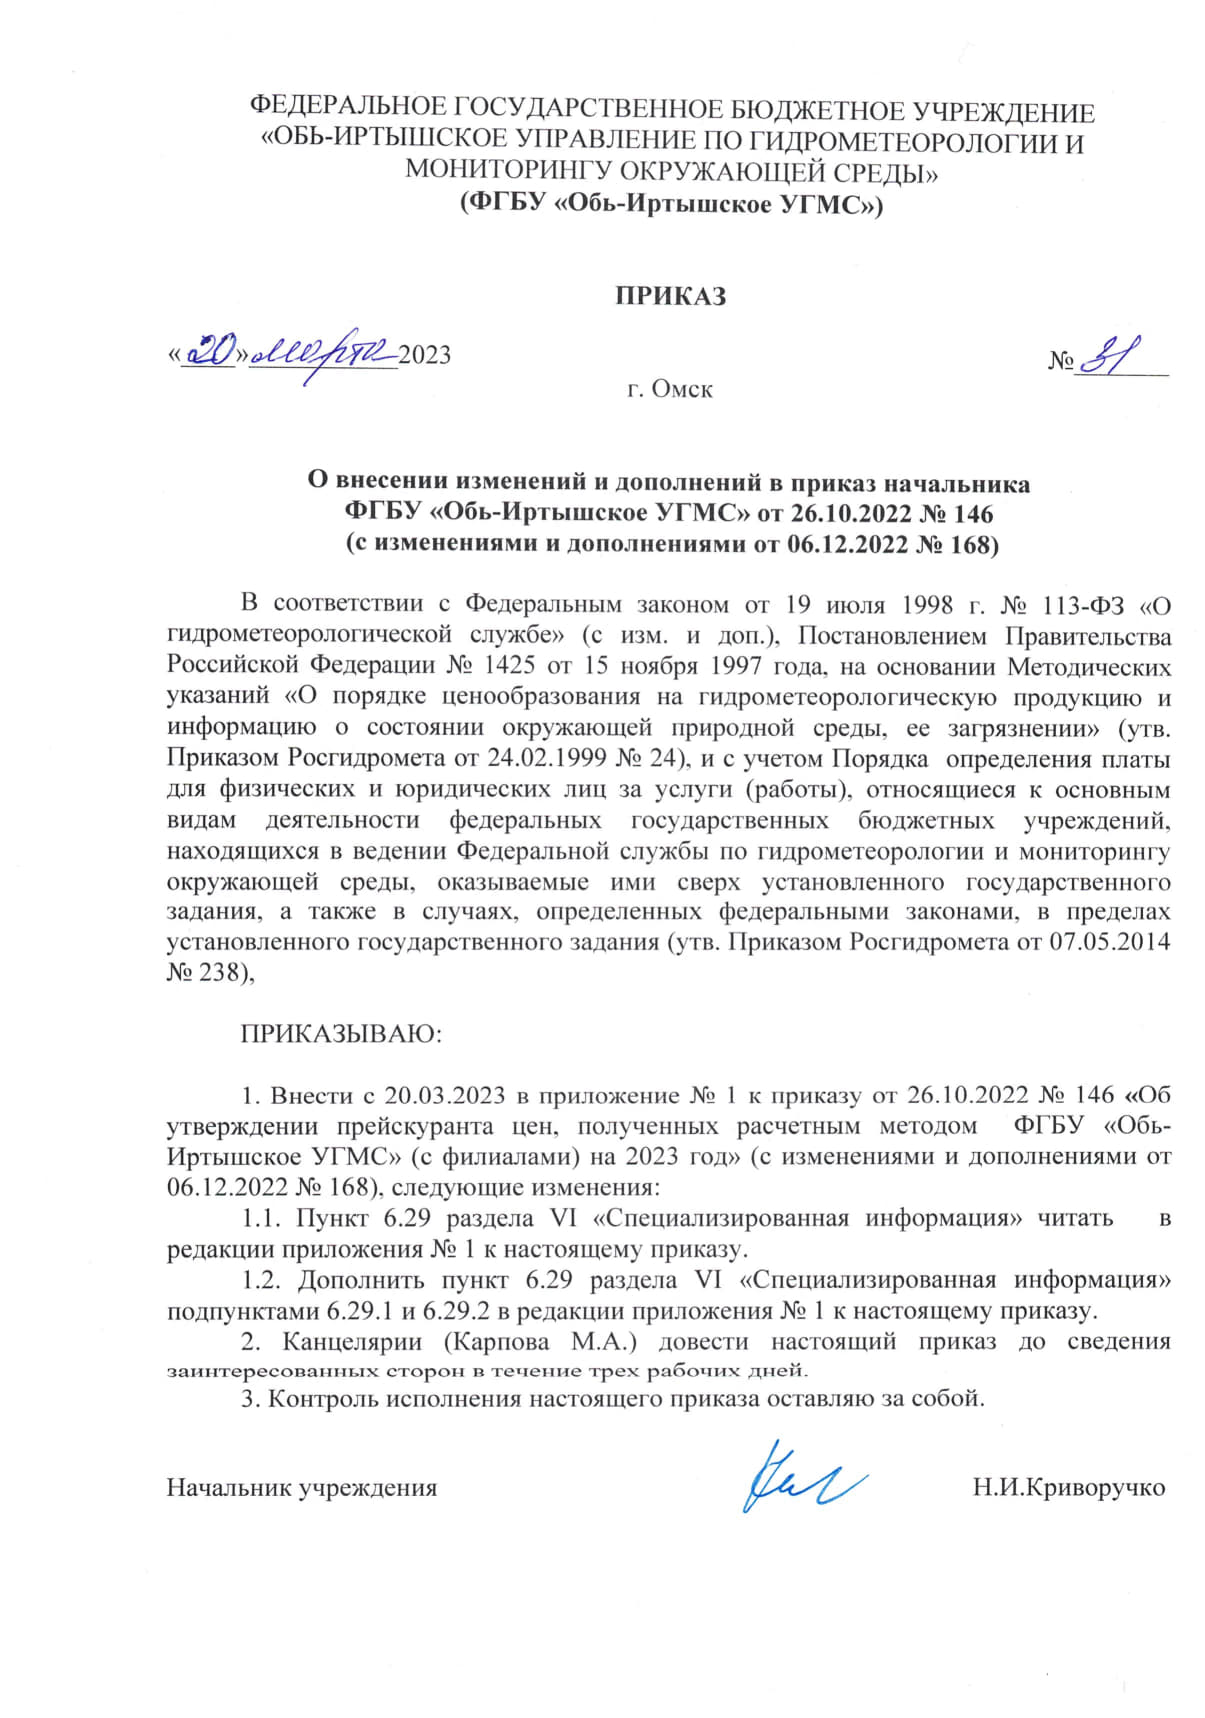 Приказ № 31 от 20.03.2023 Дополнения к прейскуранту цен, полученных  расчетным методом на 2023 год - omsk-meteo.ru